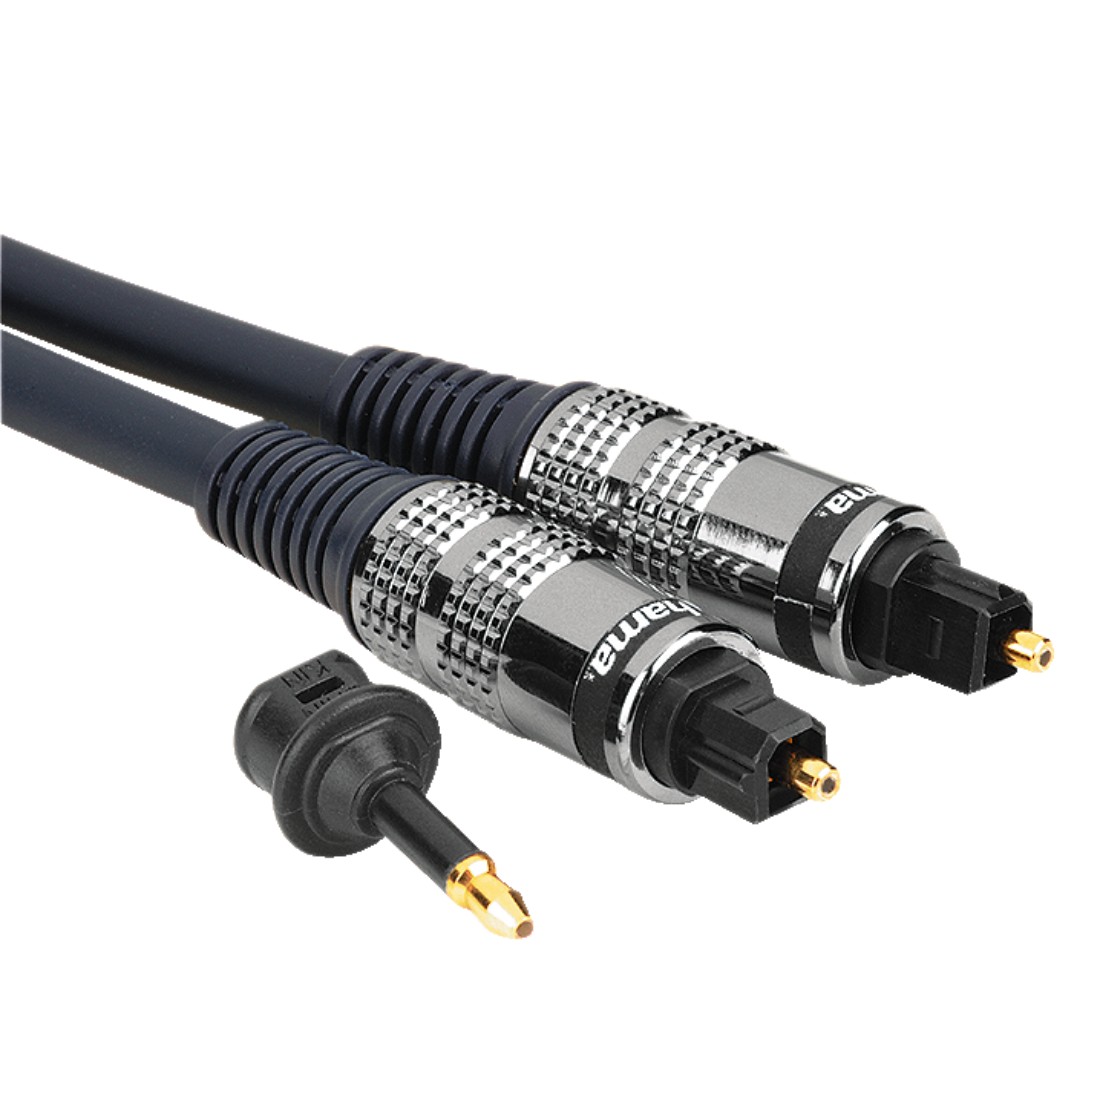 Spdif коаксиальный. SPDIF оптический кабель 3.5 RCA. 3.5 Мм к RCA SPDIF коаксиальный цифровой аудиокабель. Разъем s/PDIF коаксиальный. Oehlbach Toslink Digital Optical Cable 217.